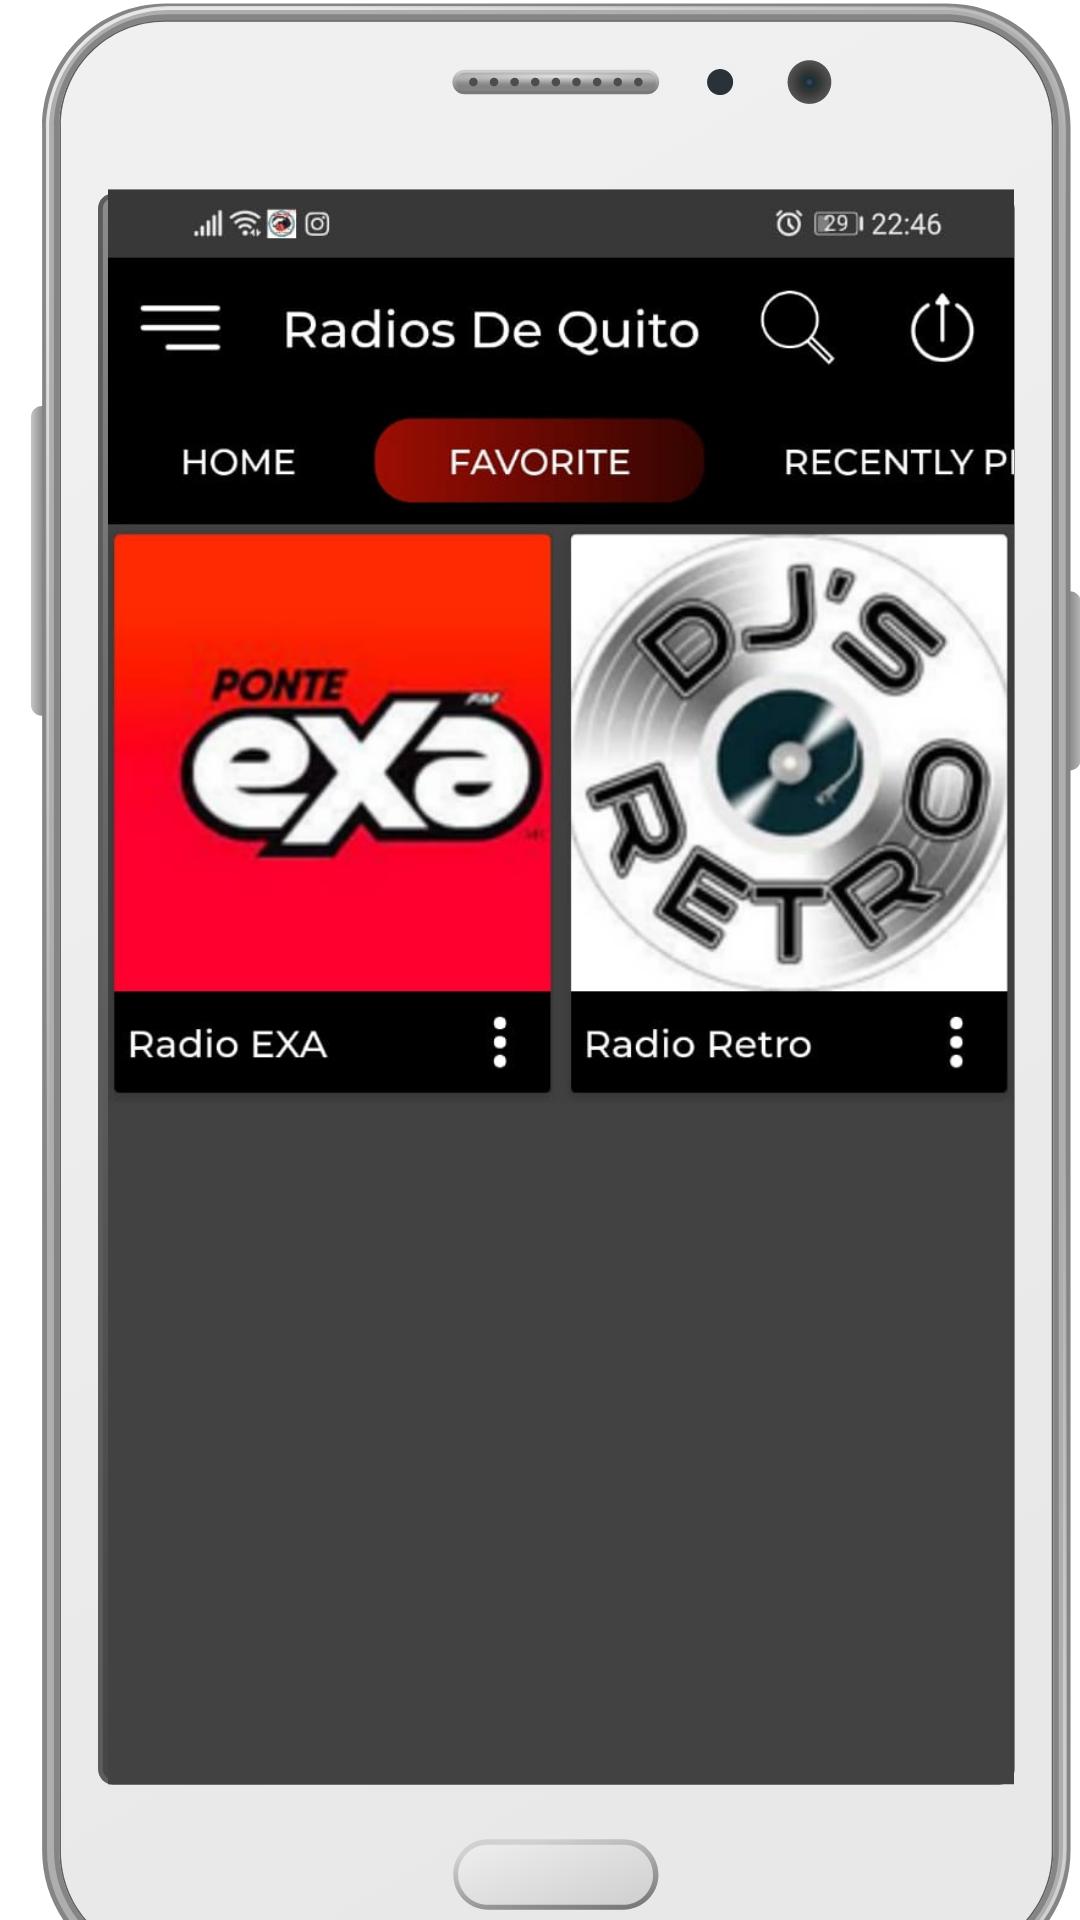 下载Radios Quito am fm online apps的安卓版本